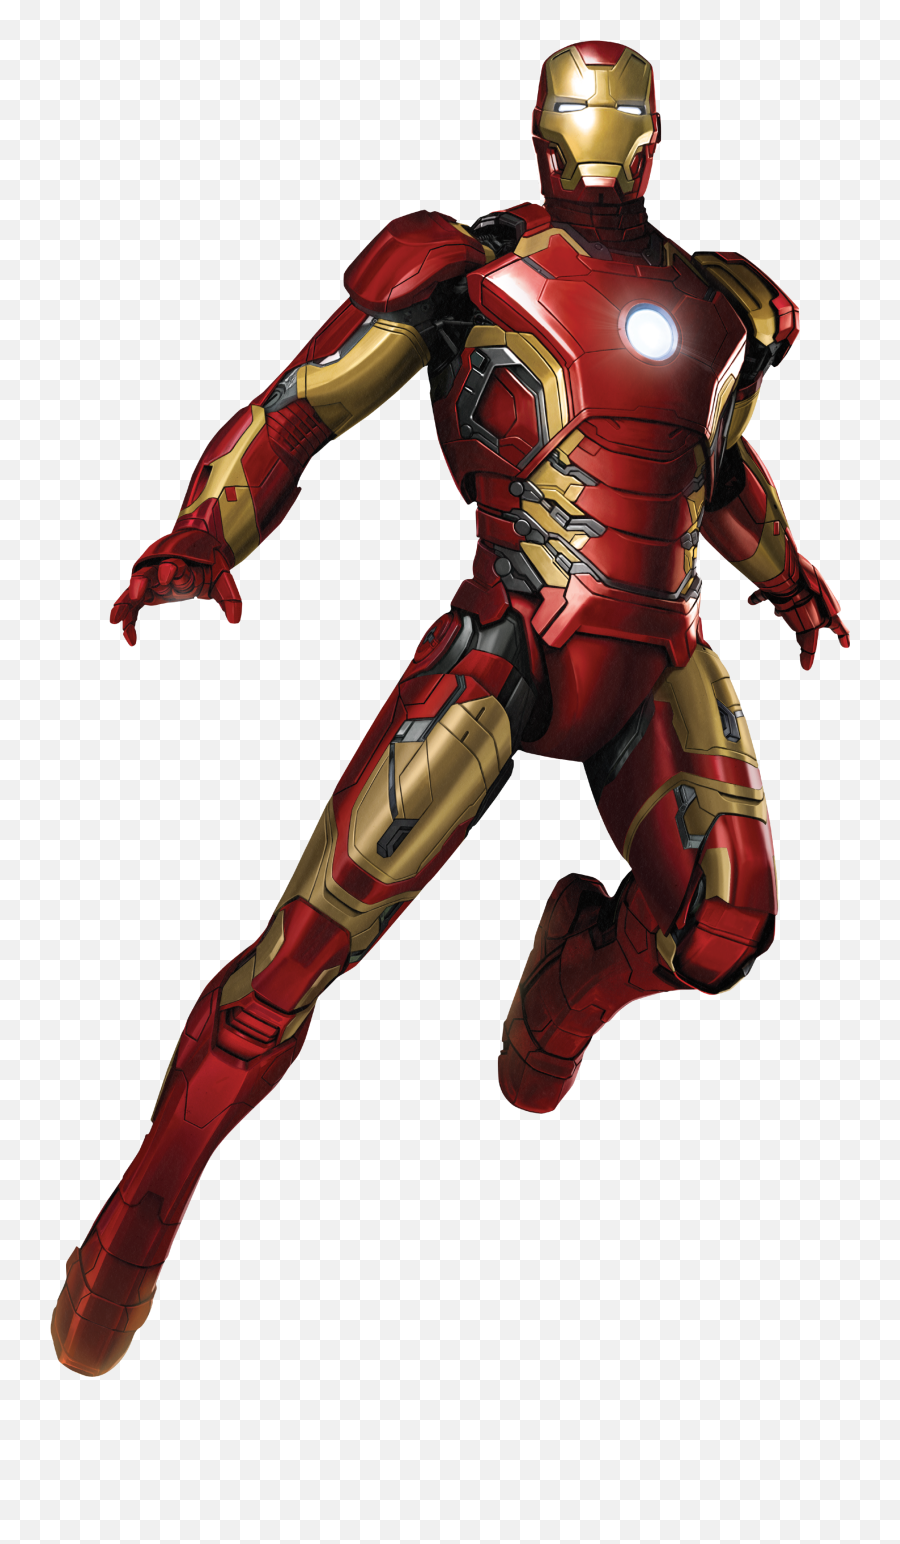 Iron Man Transparent Png Clipart - Iron Man Png,Iron Man Transparent